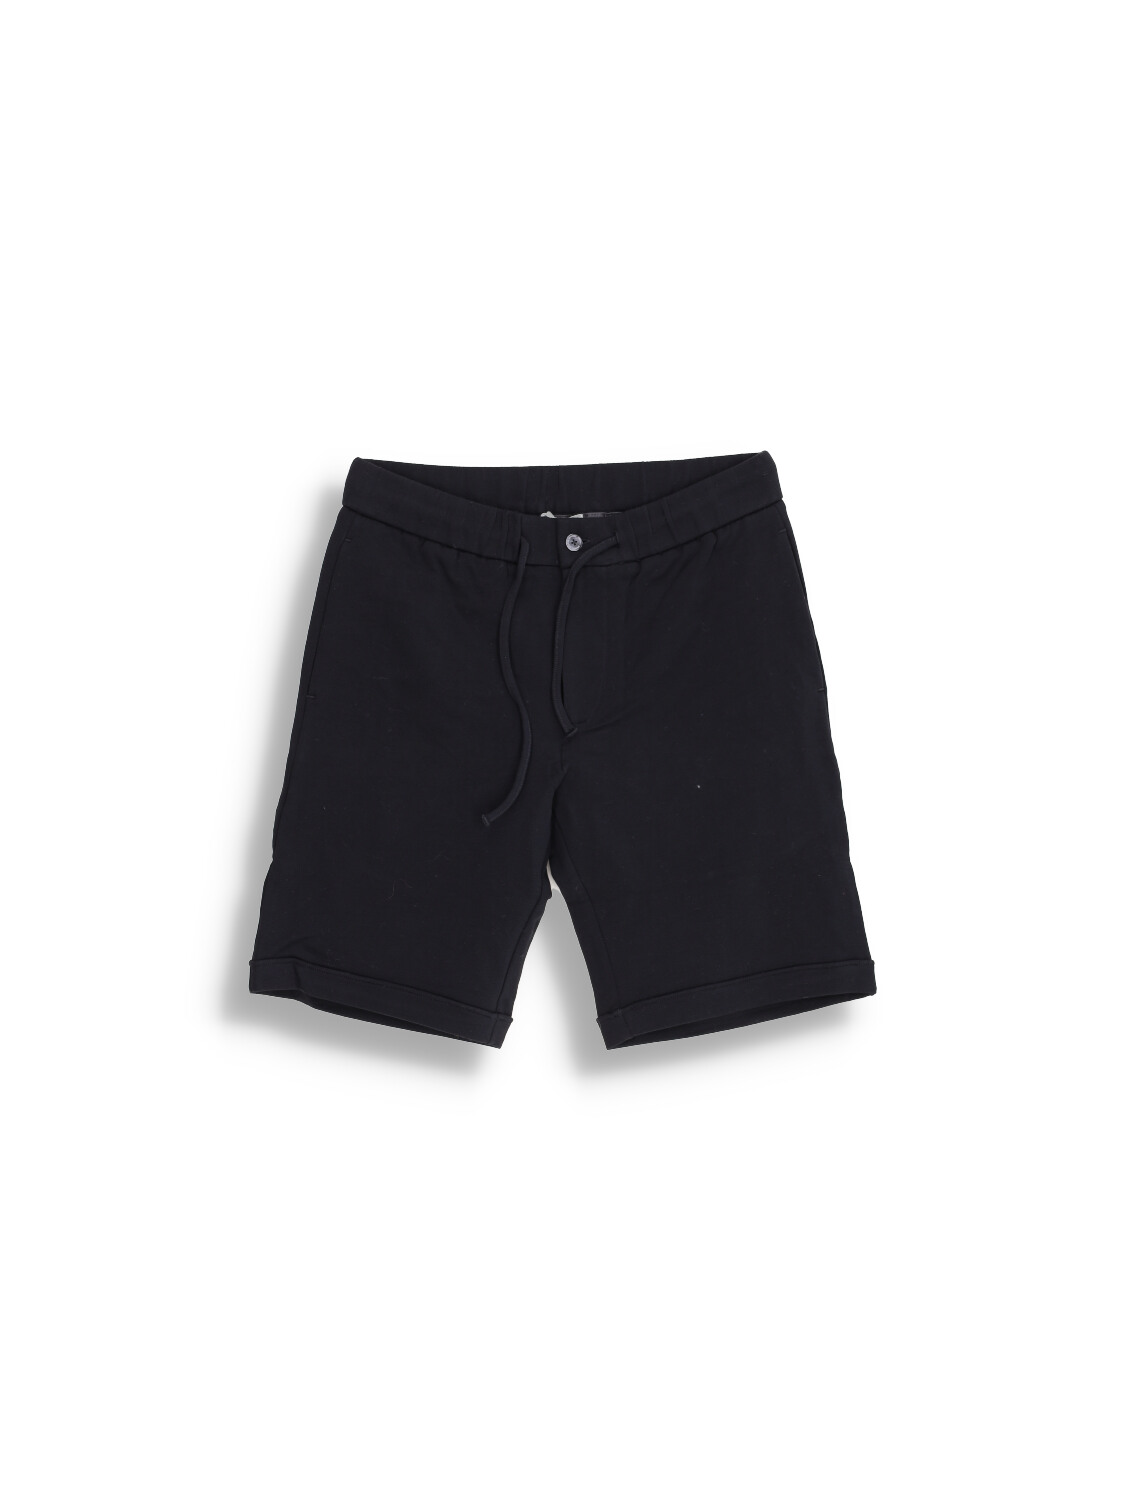 Stefan Brandt Jon Bermuda – Shorts mit Gummibund aus Baumwolle schwarz M